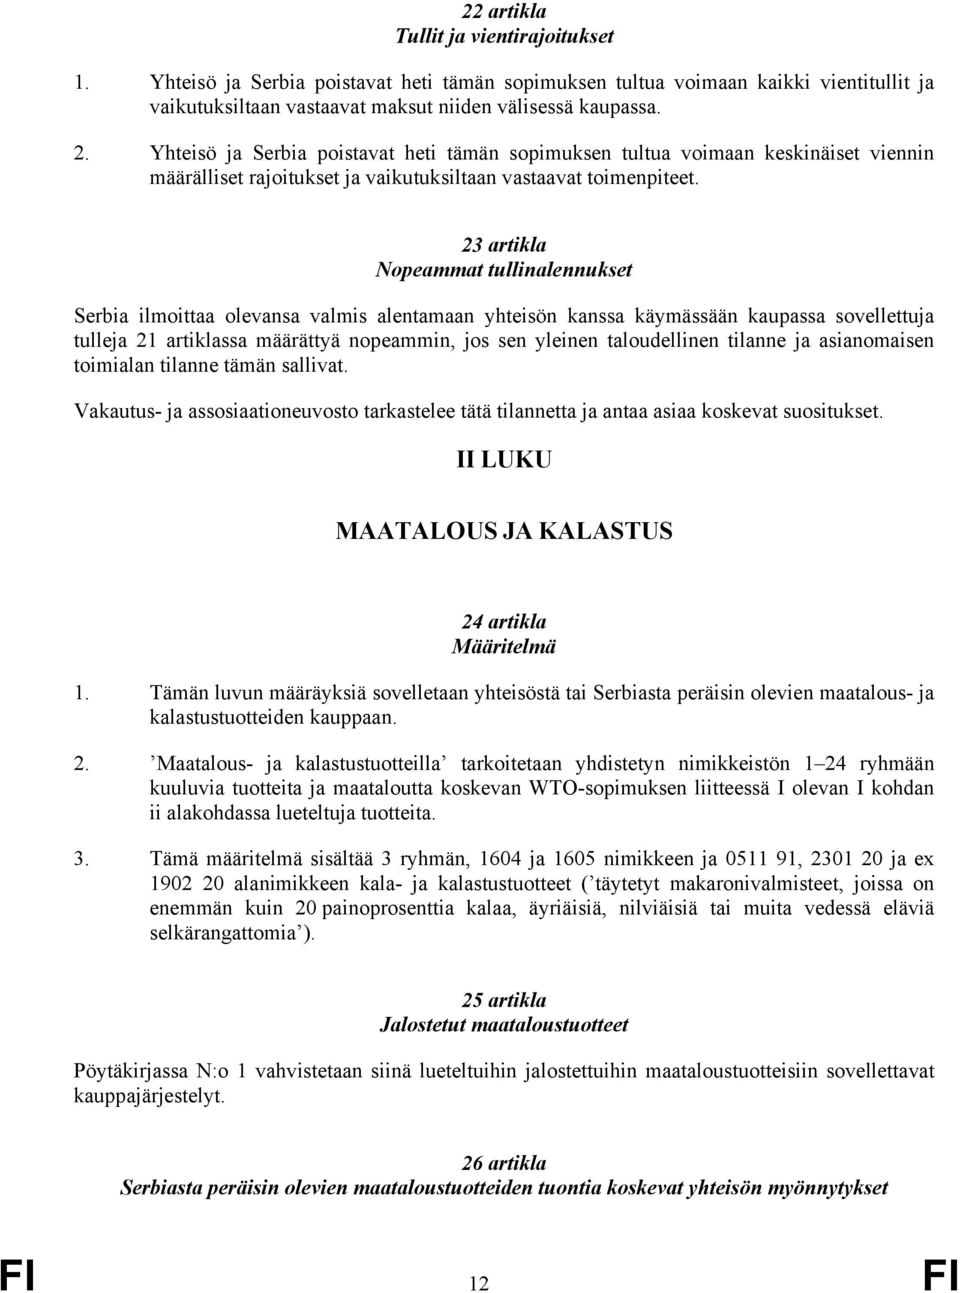 23 artikla Nopeammat tullinalennukset Serbia ilmoittaa olevansa valmis alentamaan yhteisön kanssa käymässään kaupassa sovellettuja tulleja 21 artiklassa määrättyä nopeammin, jos sen yleinen